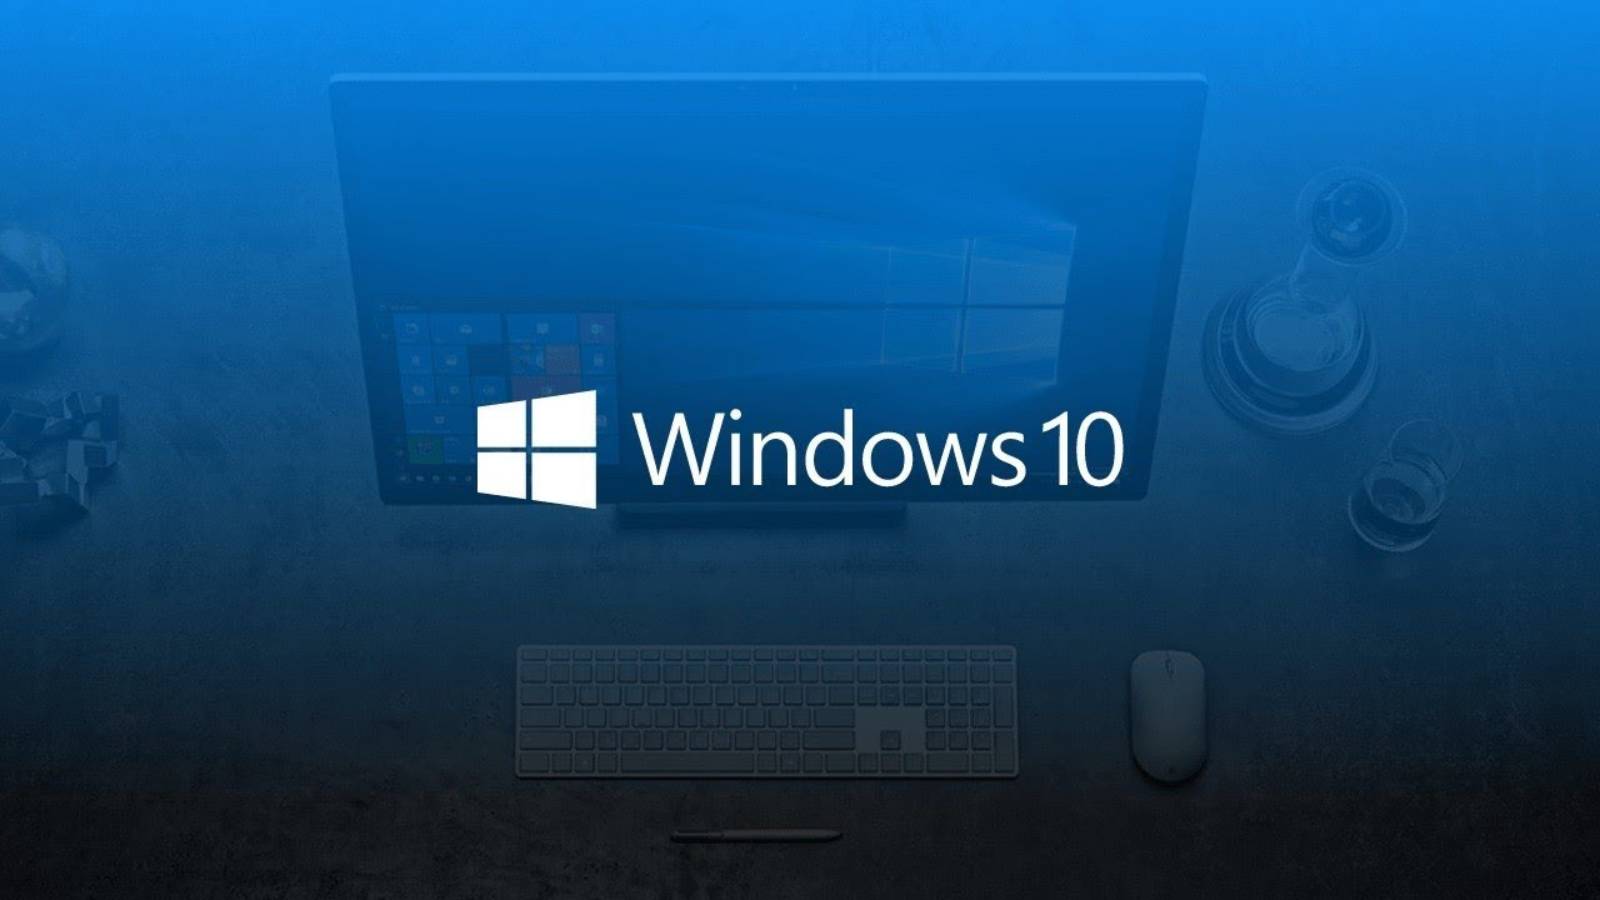 Windows 10 crashes